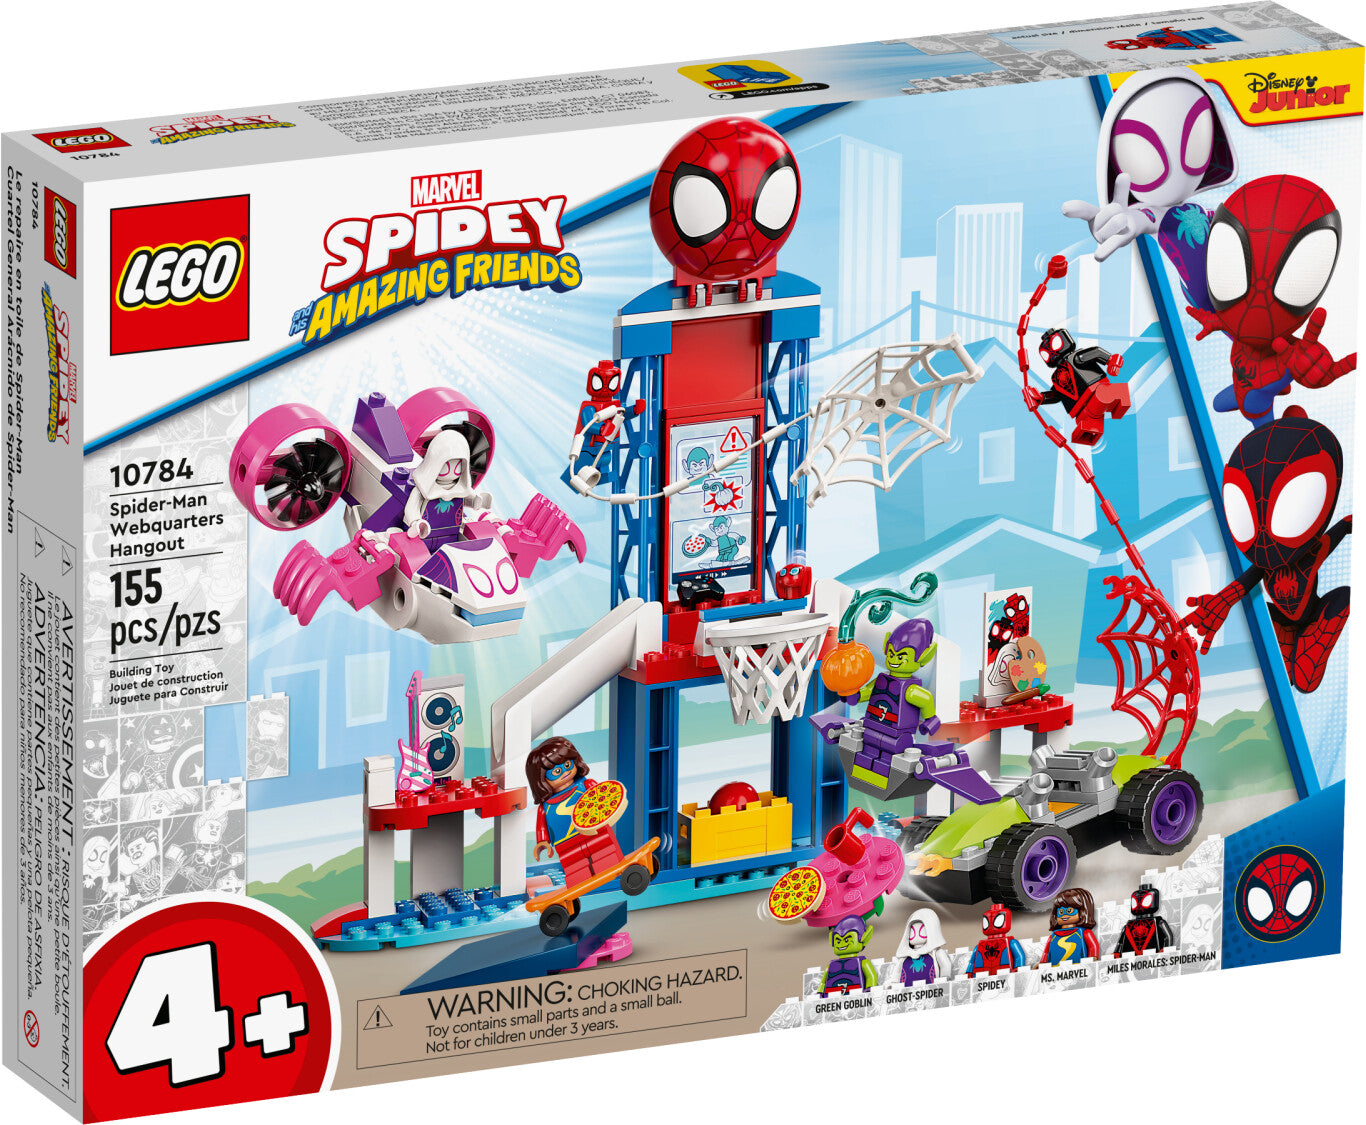 LEGO 10784 Spideyund seine Super Freunde Spider-Mans Hauptquartier ab 4+